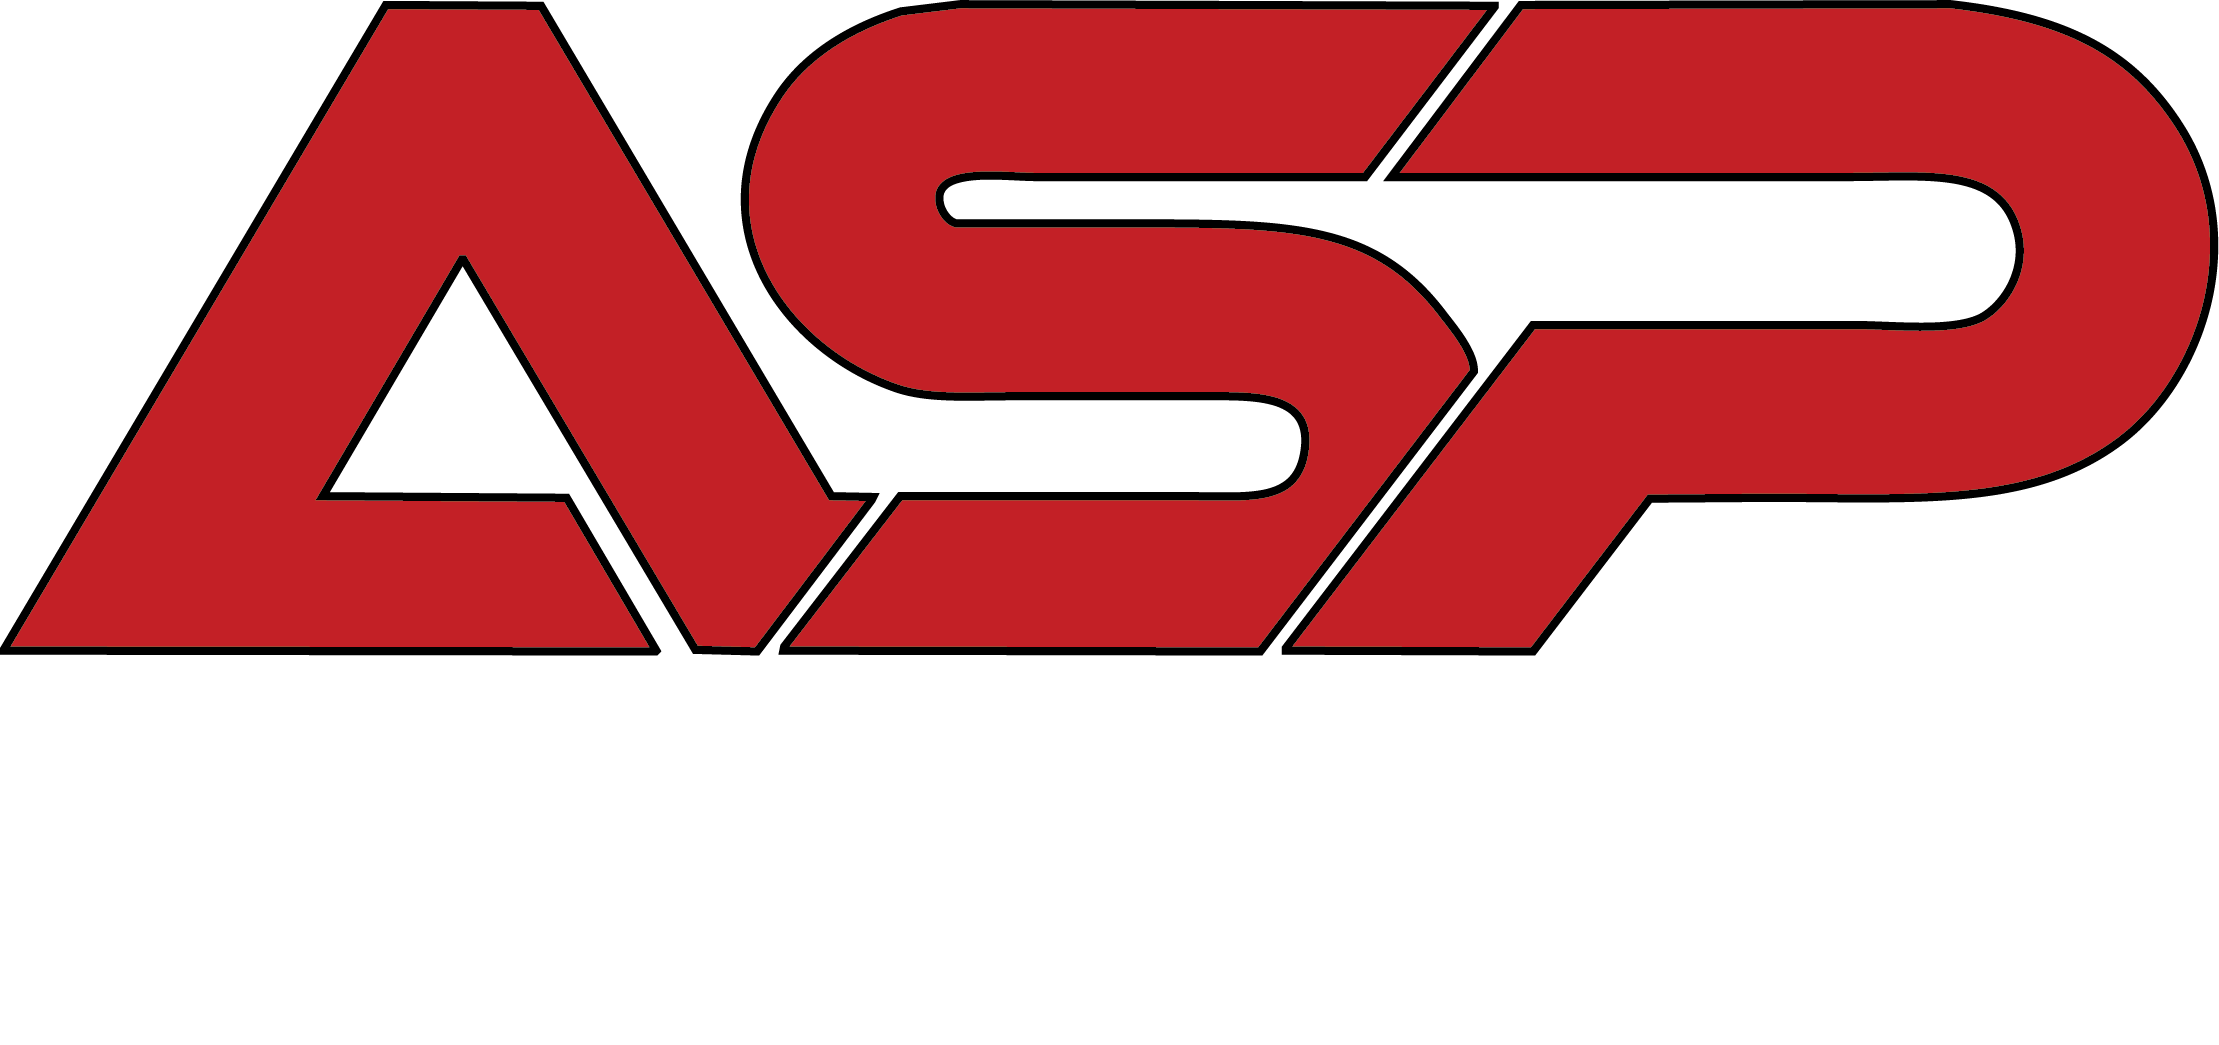 ASP - All Service Providers